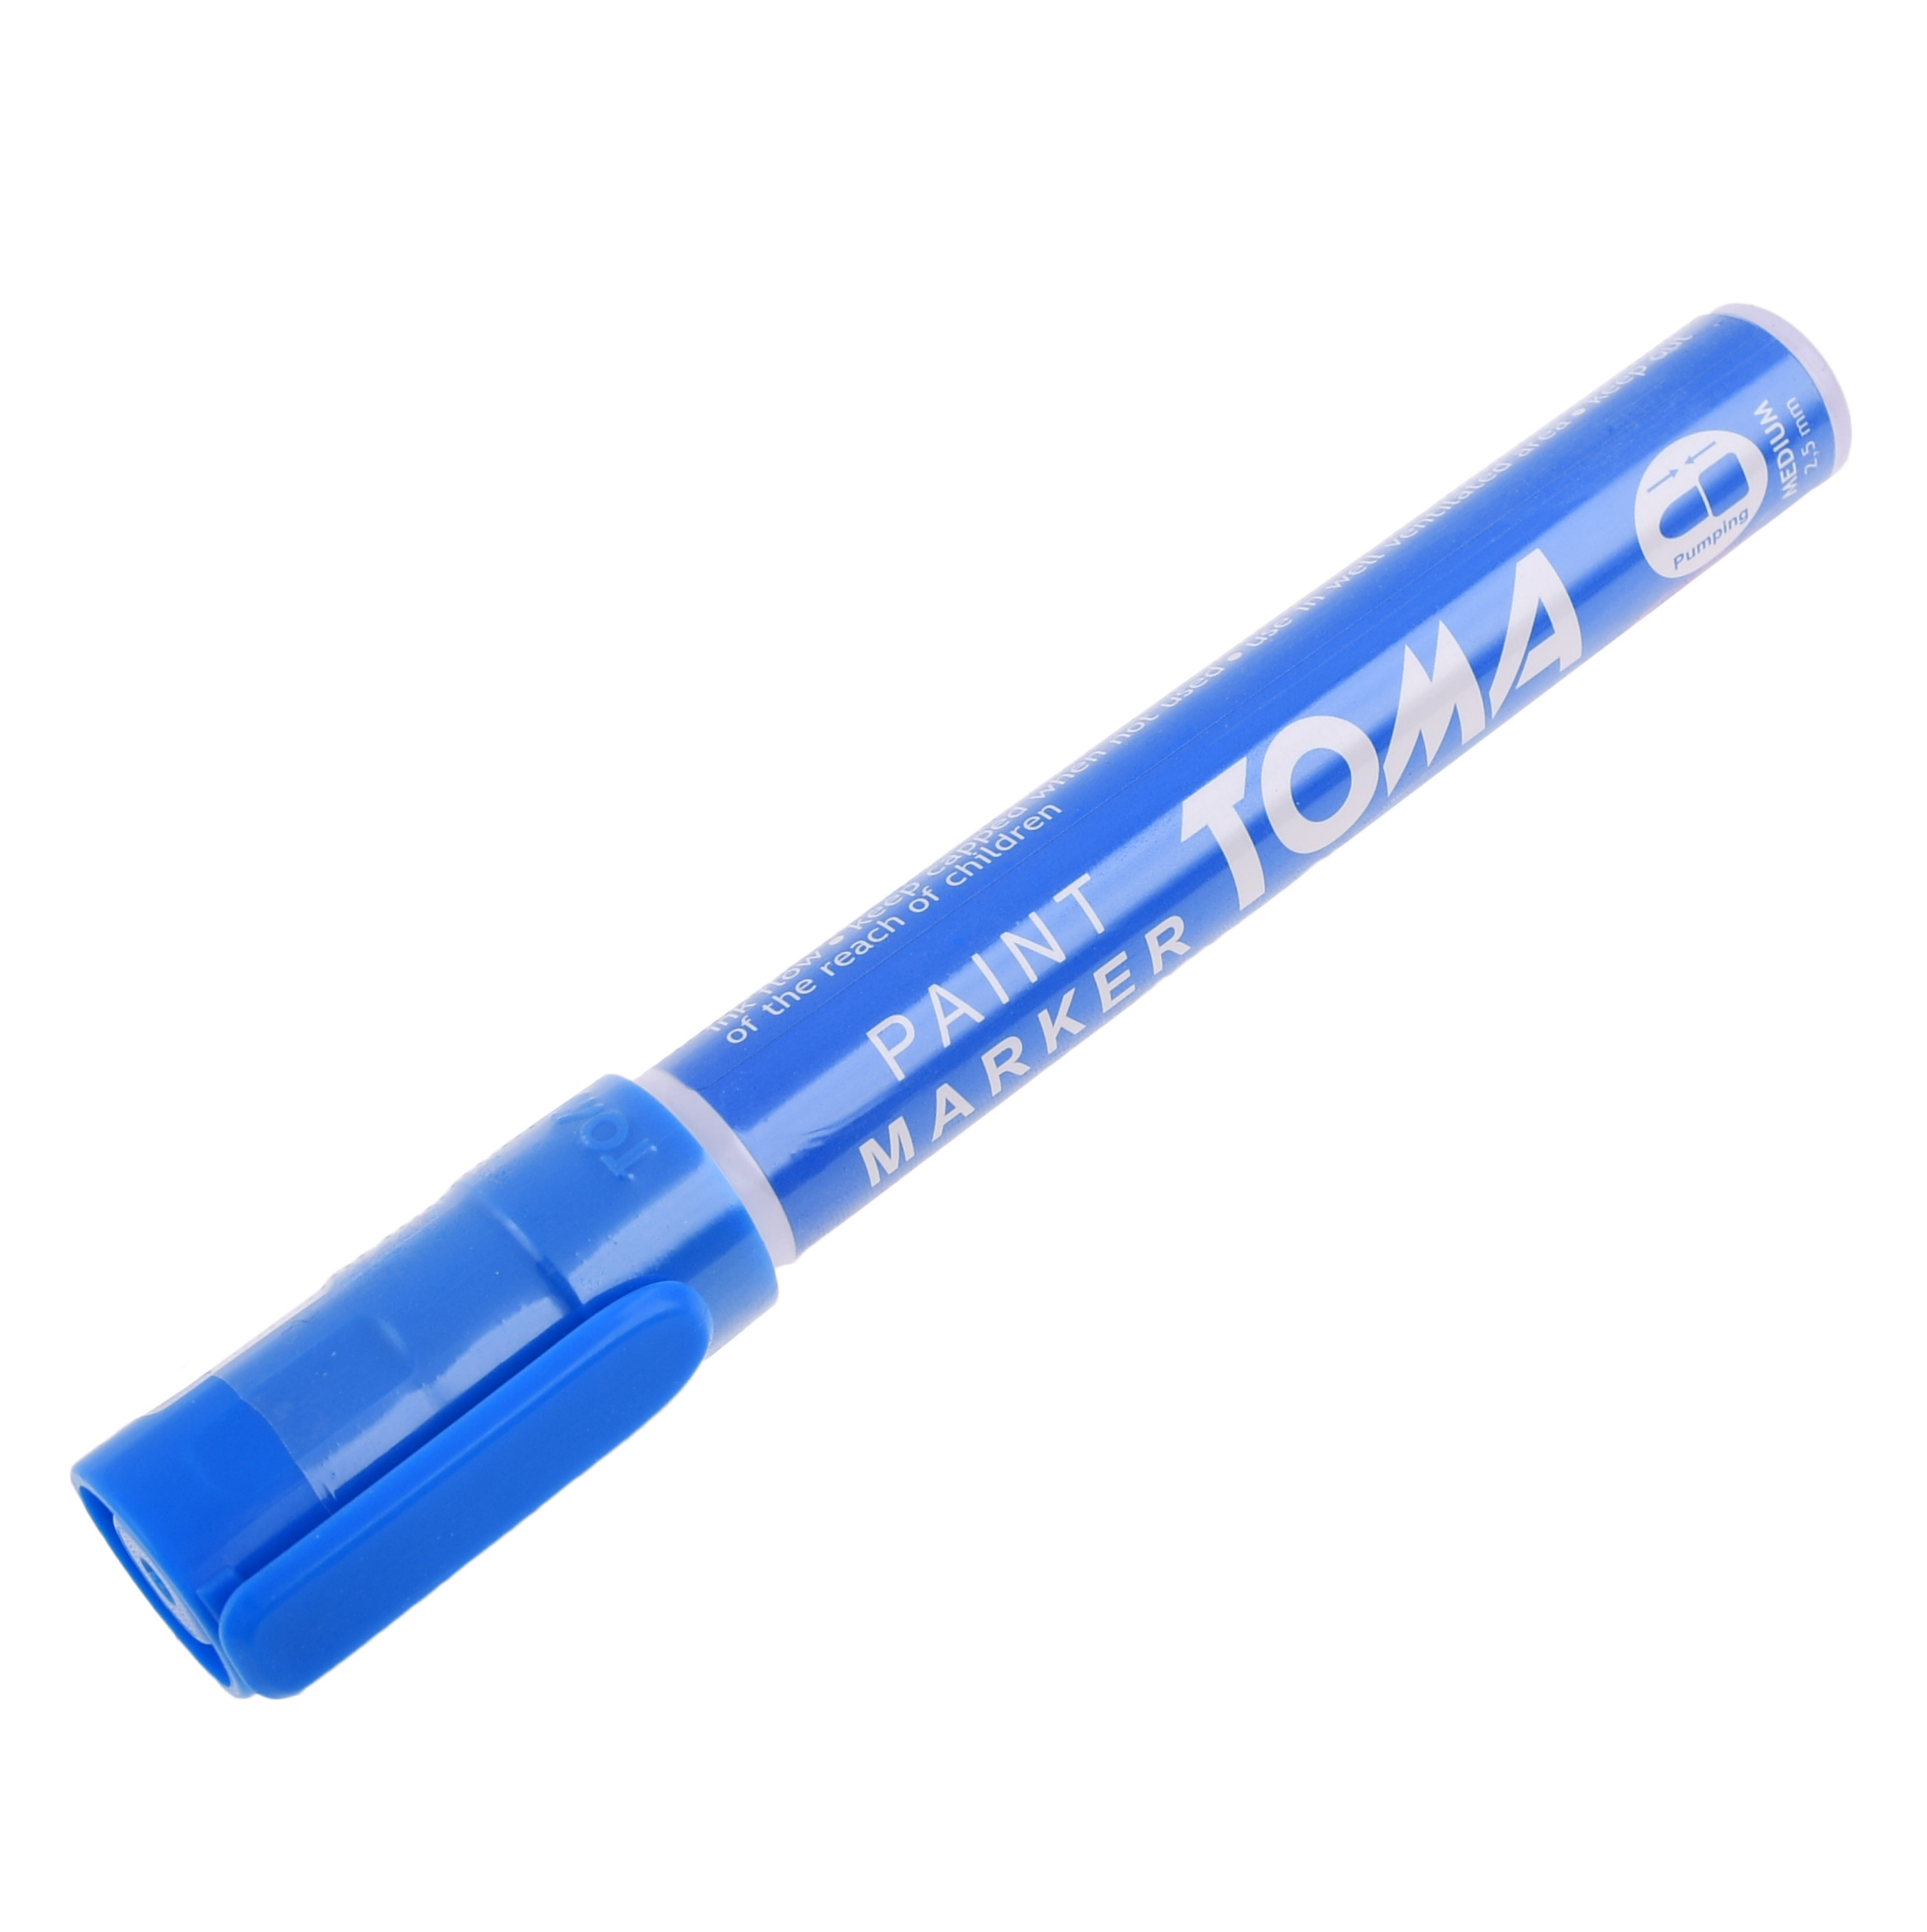 UNIVERSAL Blauer Marker / Stift für Stahl - Holz - Gummi - Kunststoff - Glas und Reifen - Reifenstift (hergestellt in der EU)